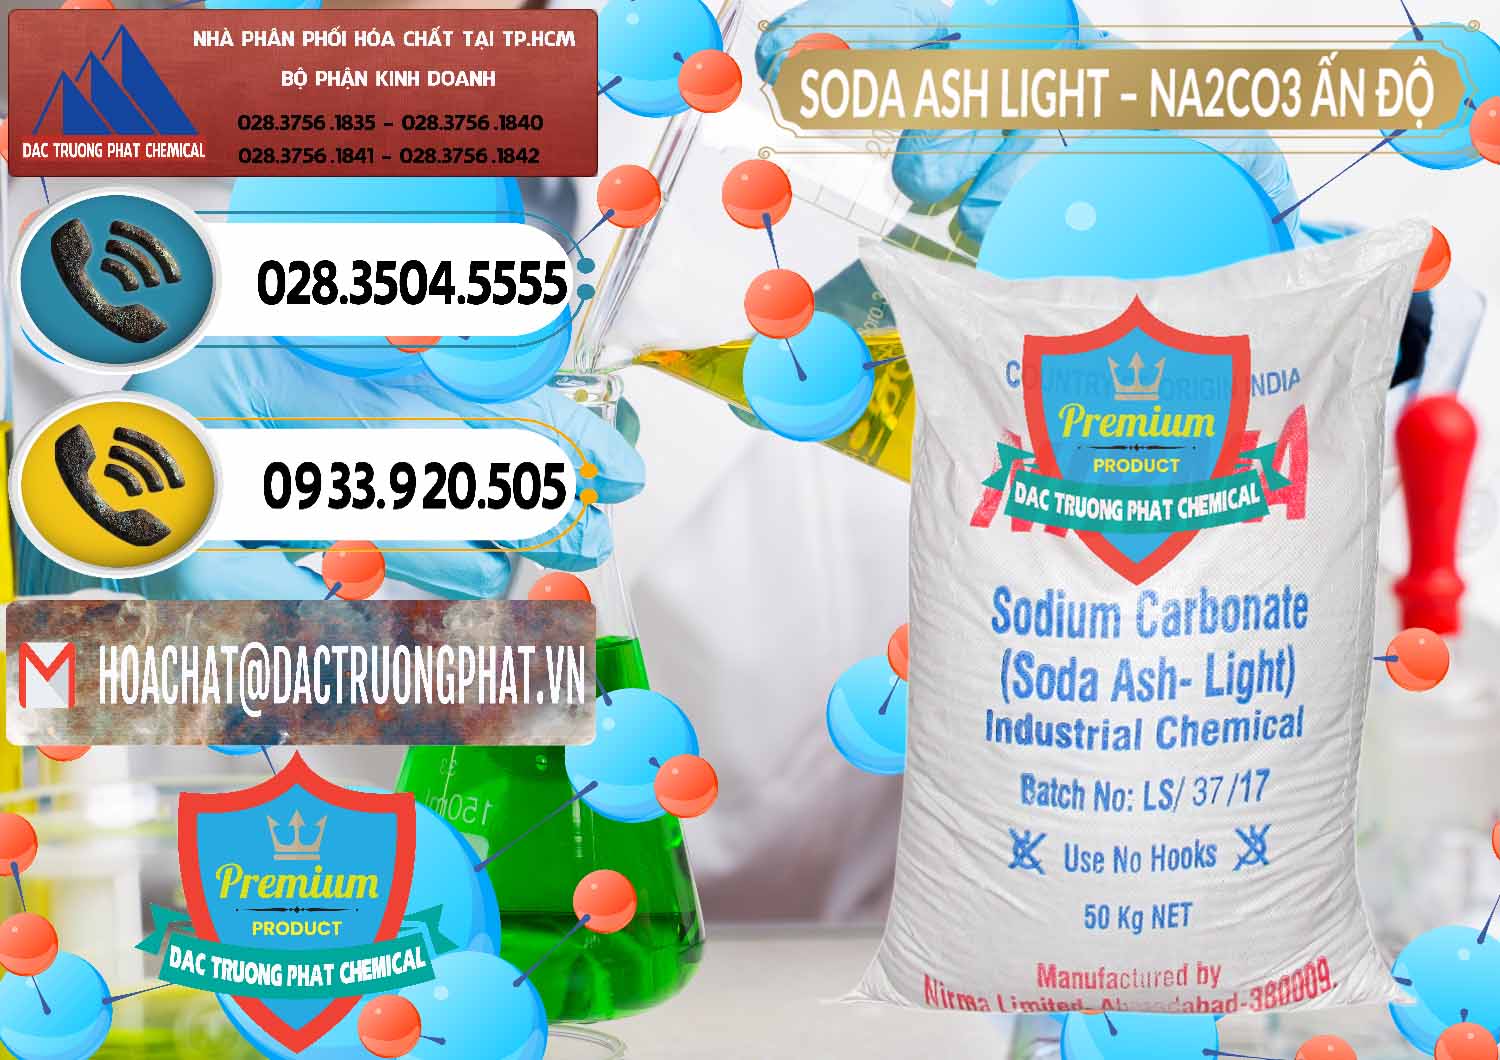 Công ty chuyên kinh doanh - bán Soda Ash Light - NA2CO3 Nirma Ấn Độ India - 0125 - Công ty phân phối & cung cấp hóa chất tại TP.HCM - hoachatdetnhuom.vn